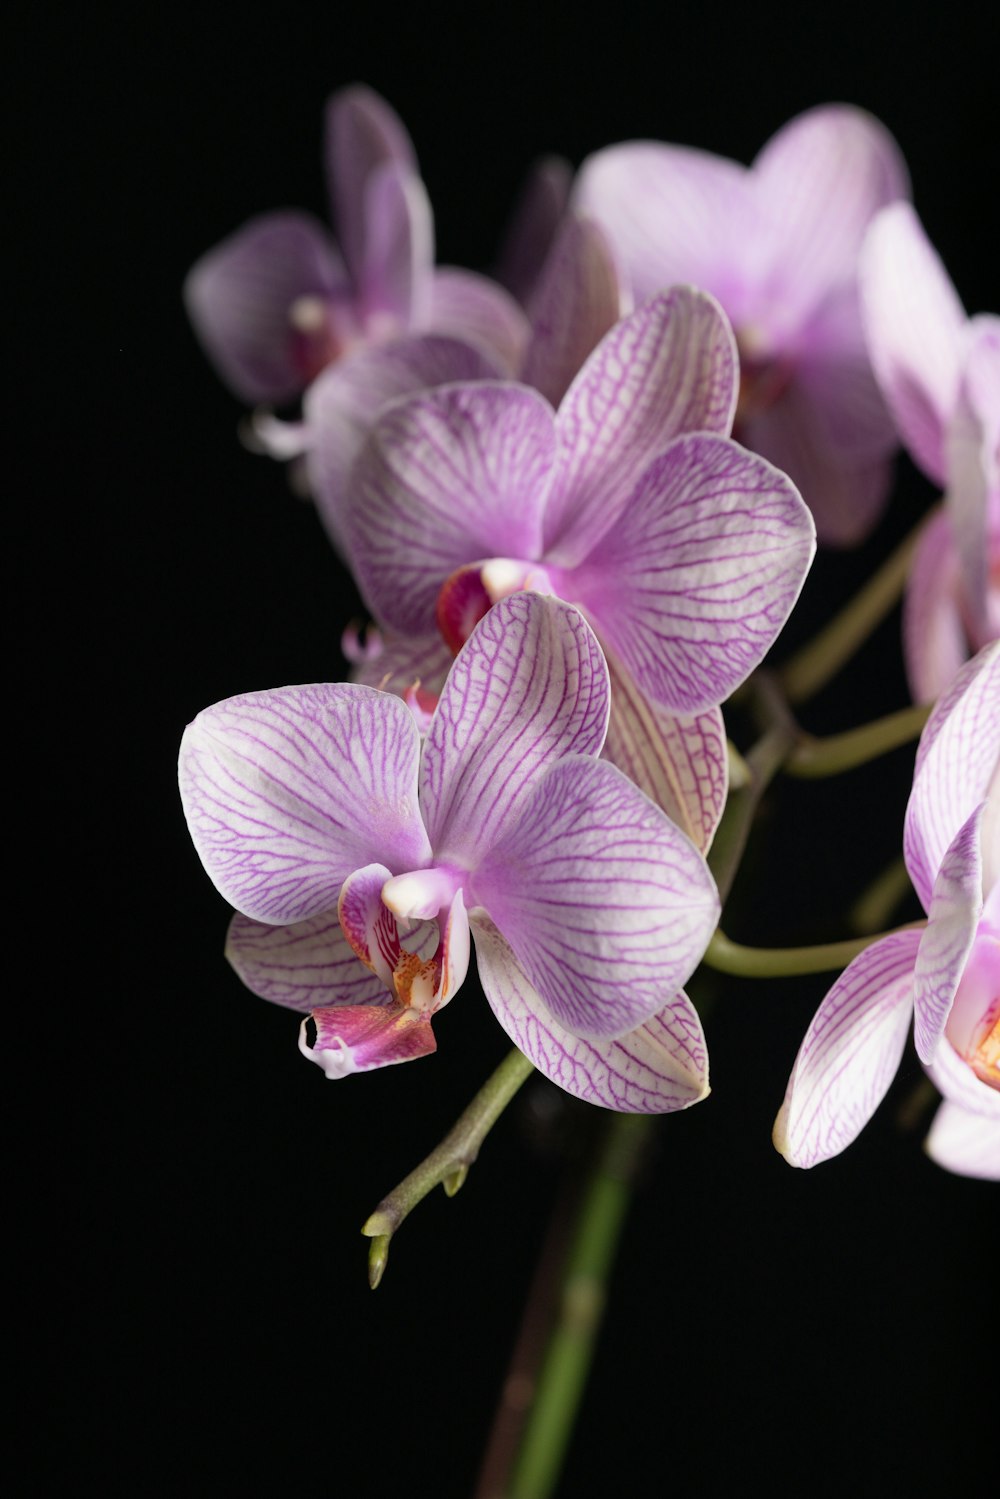 Orquídeas polilla púrpura y blanca en flor